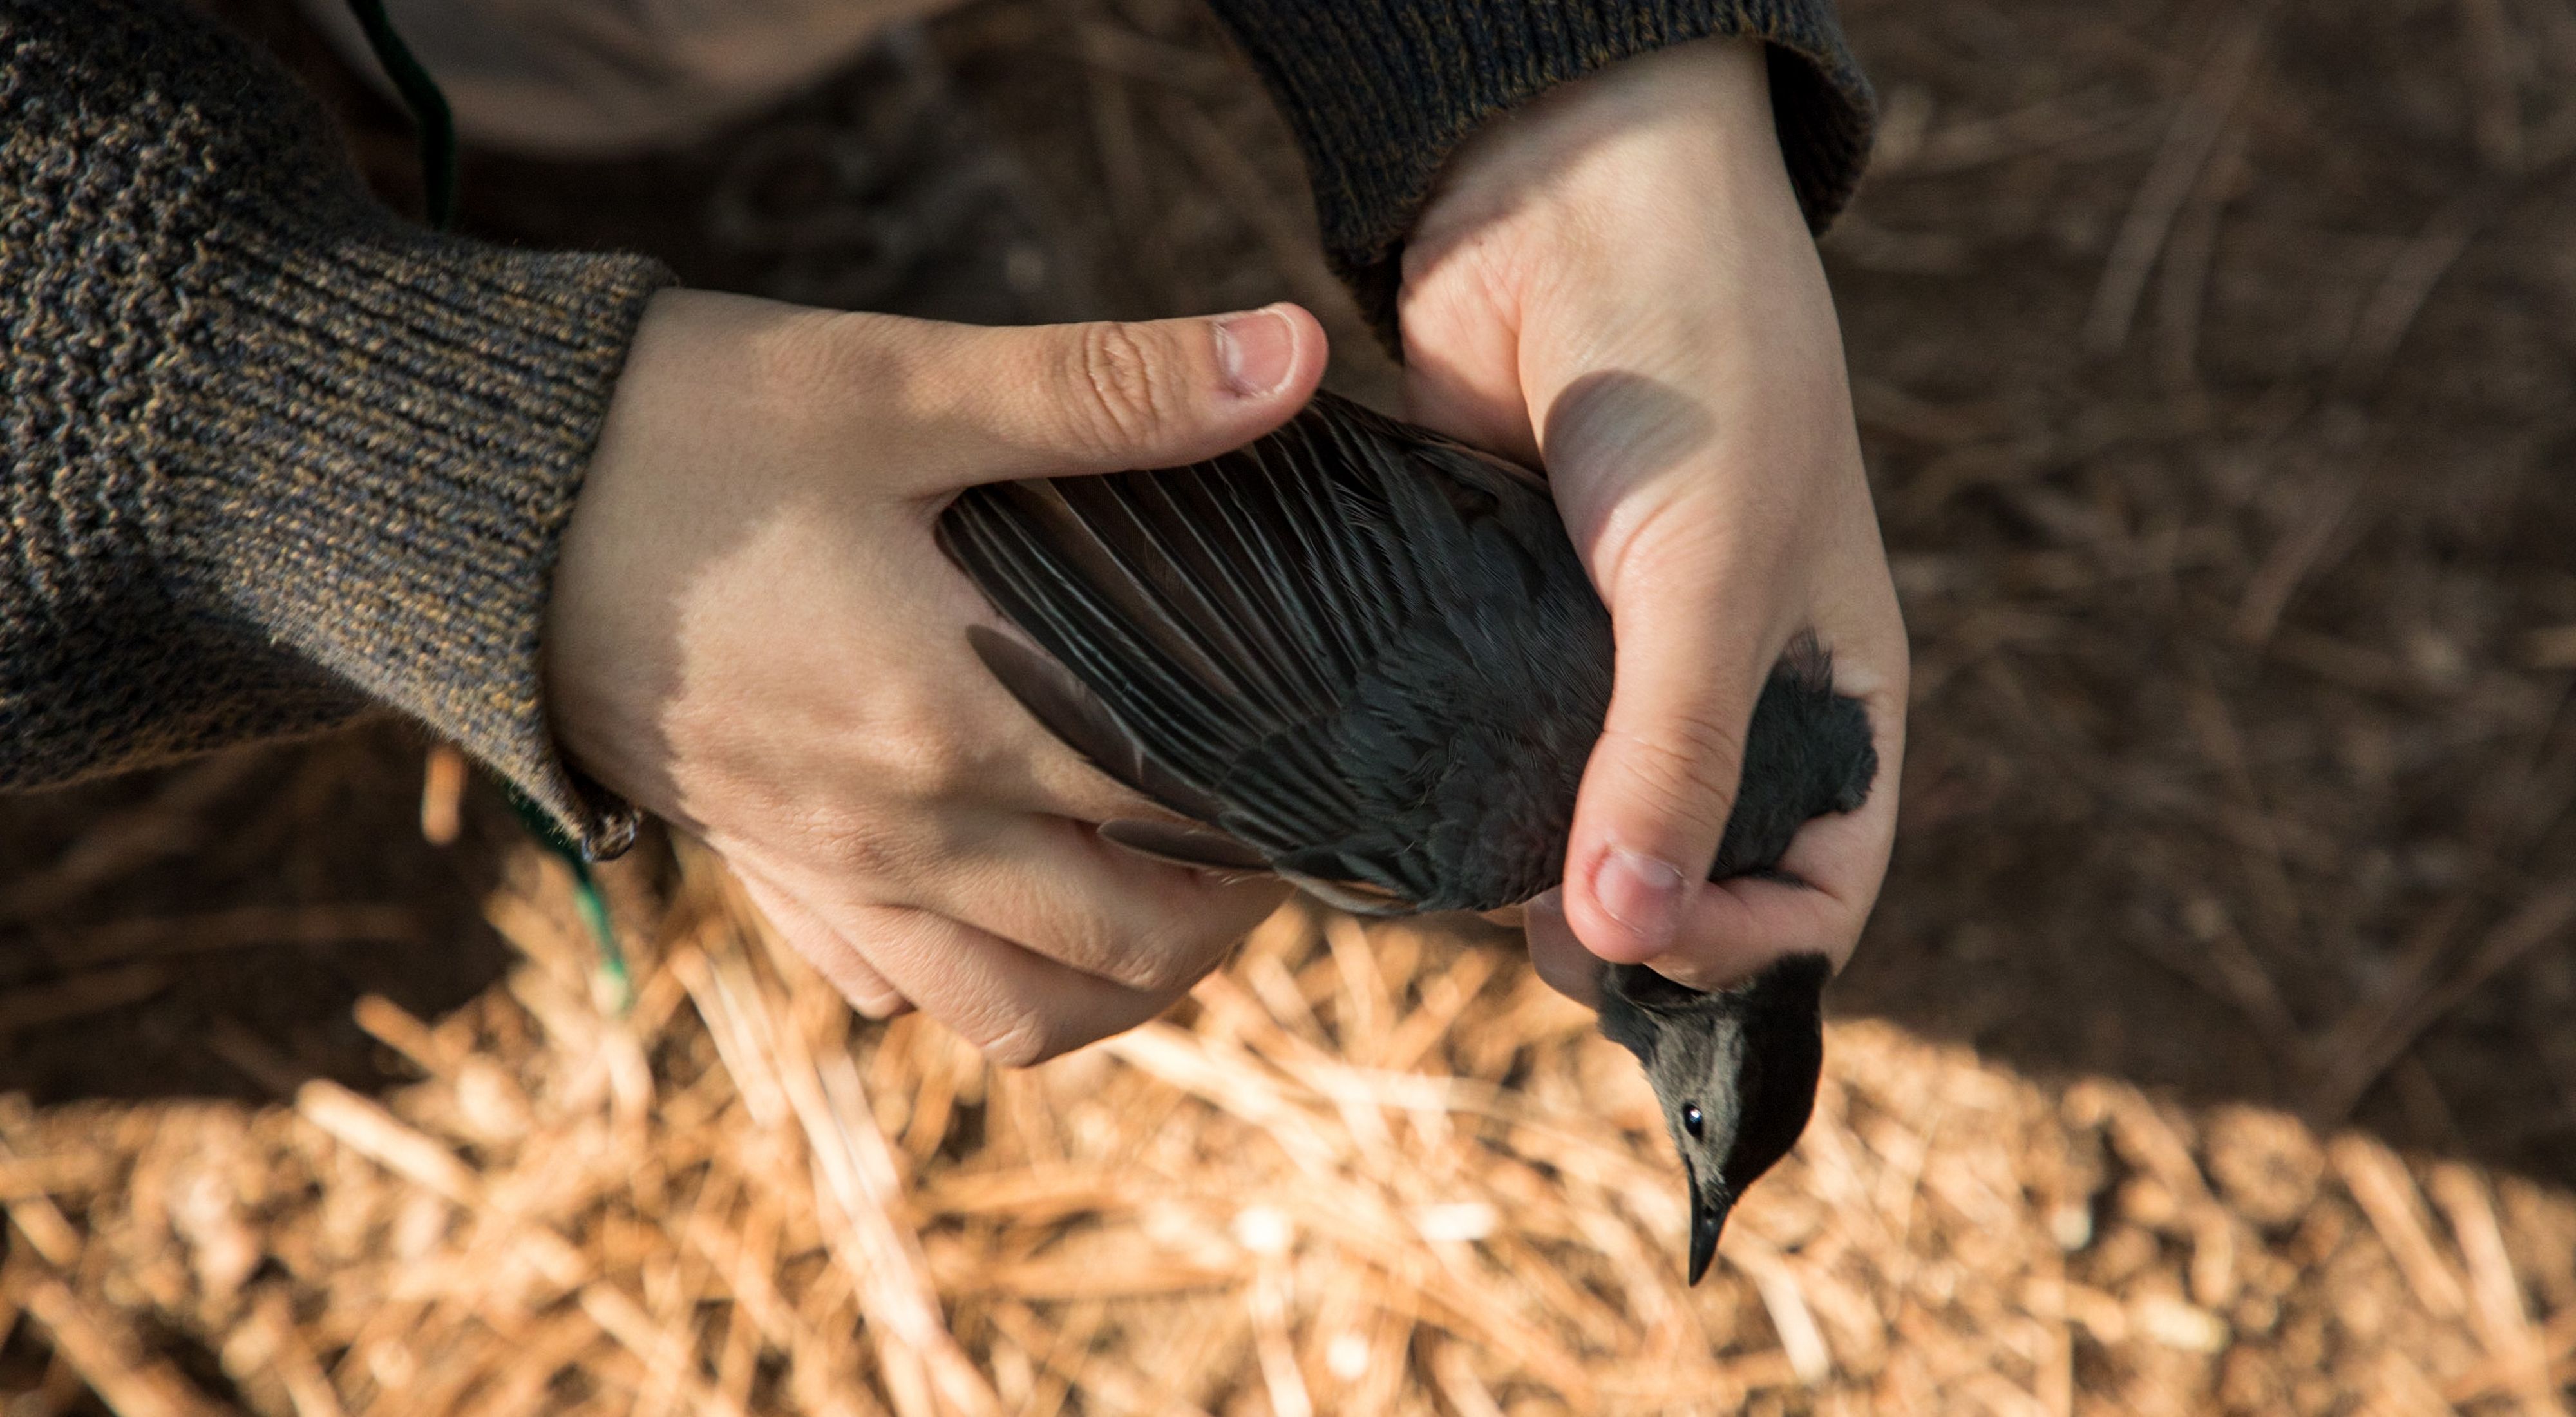 a close up of hands holding a black bird.